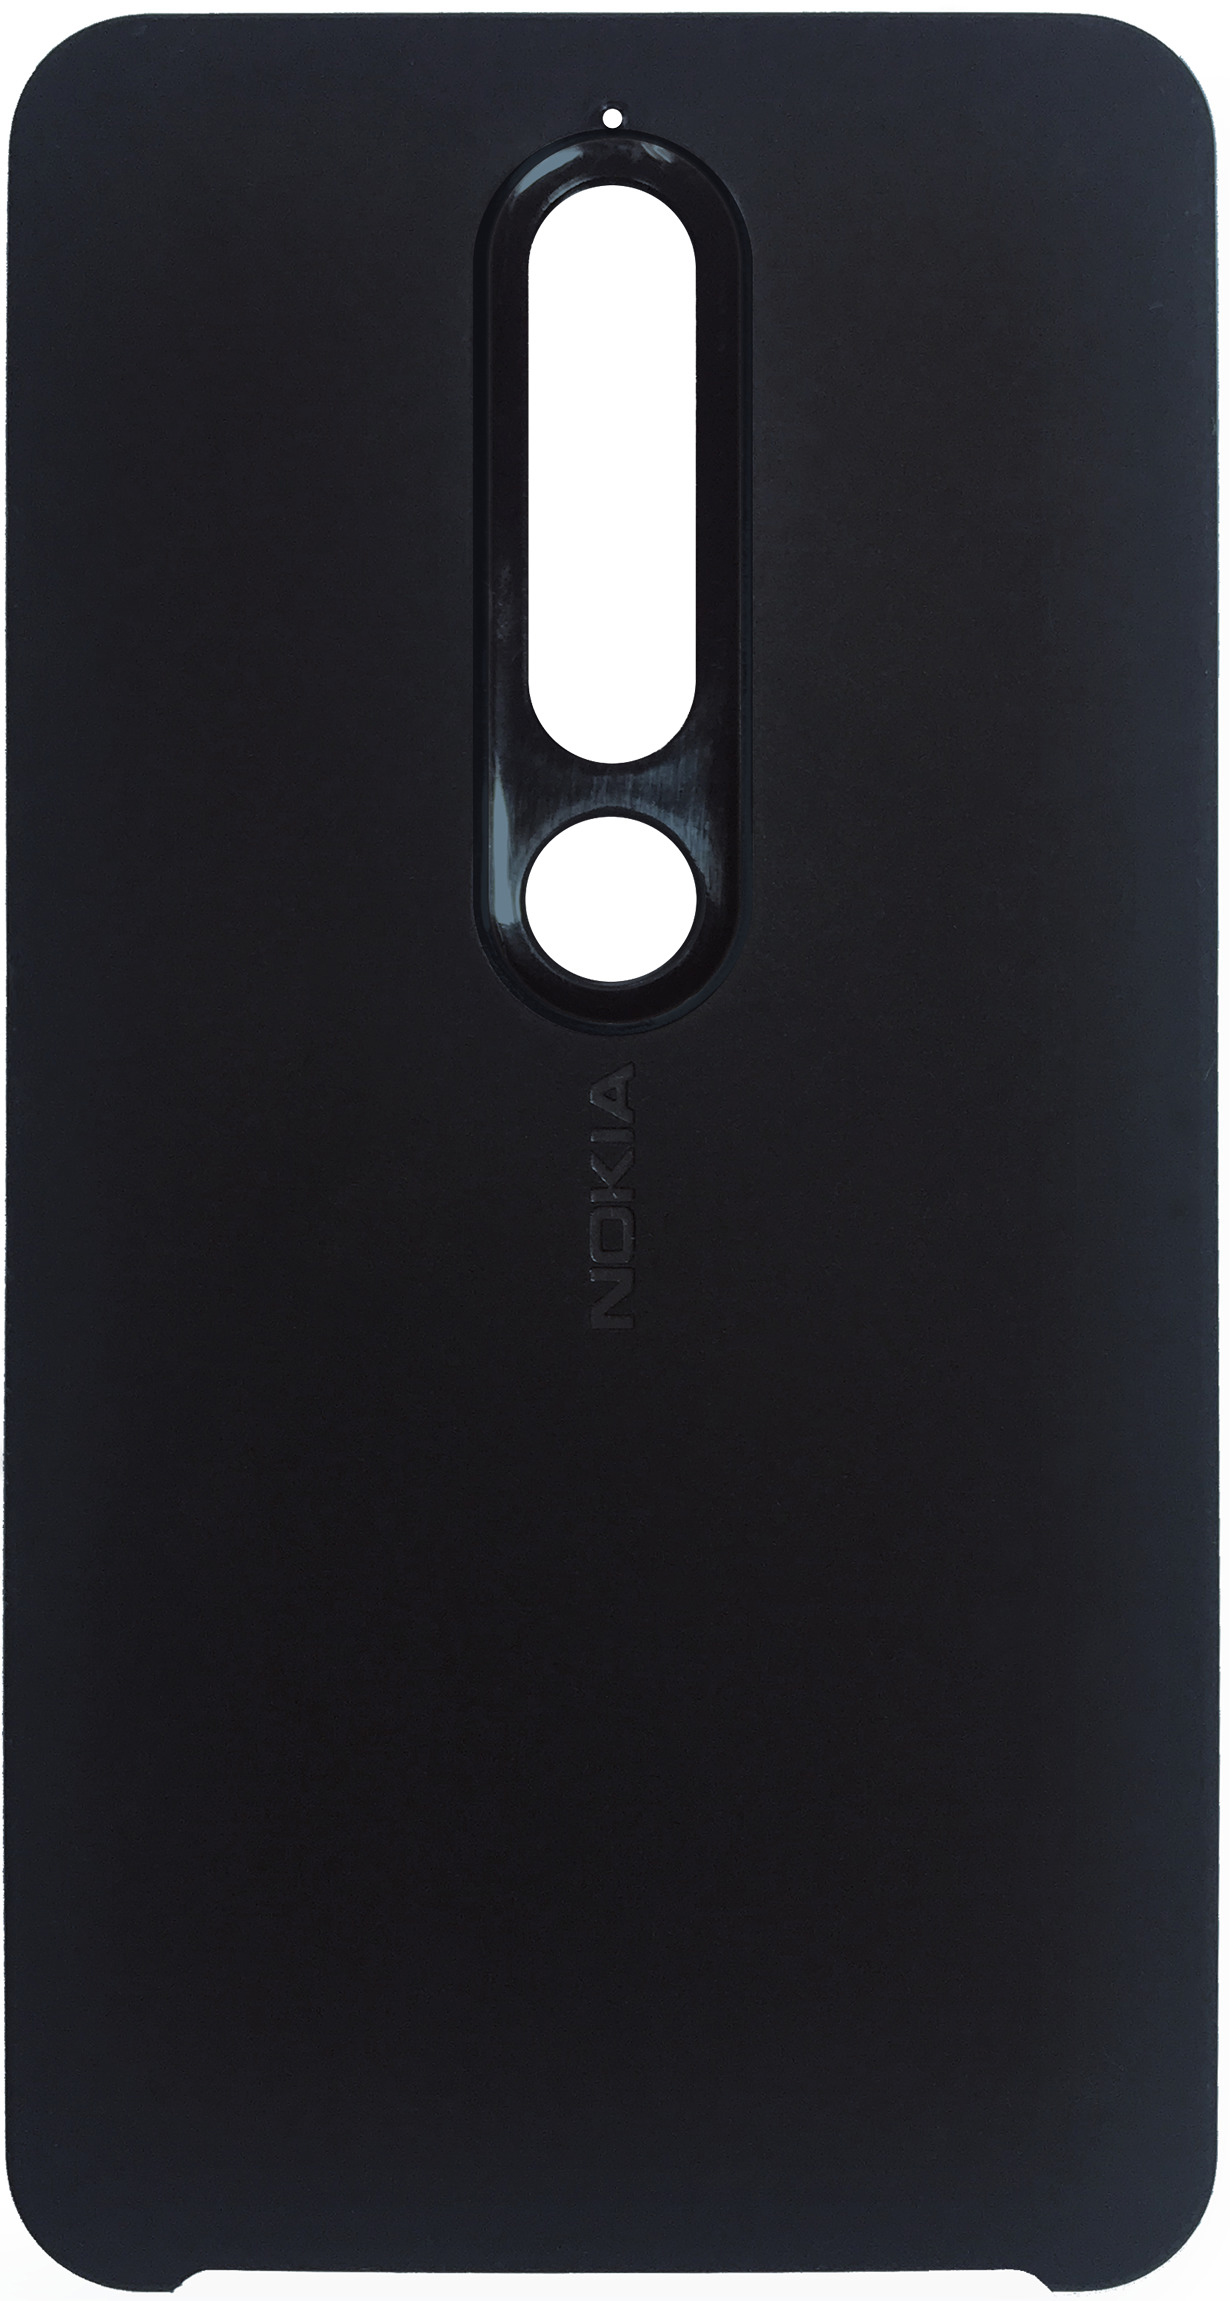 NOKIA CC 505, Backcover, Dunkelblau 6.1, Nokia